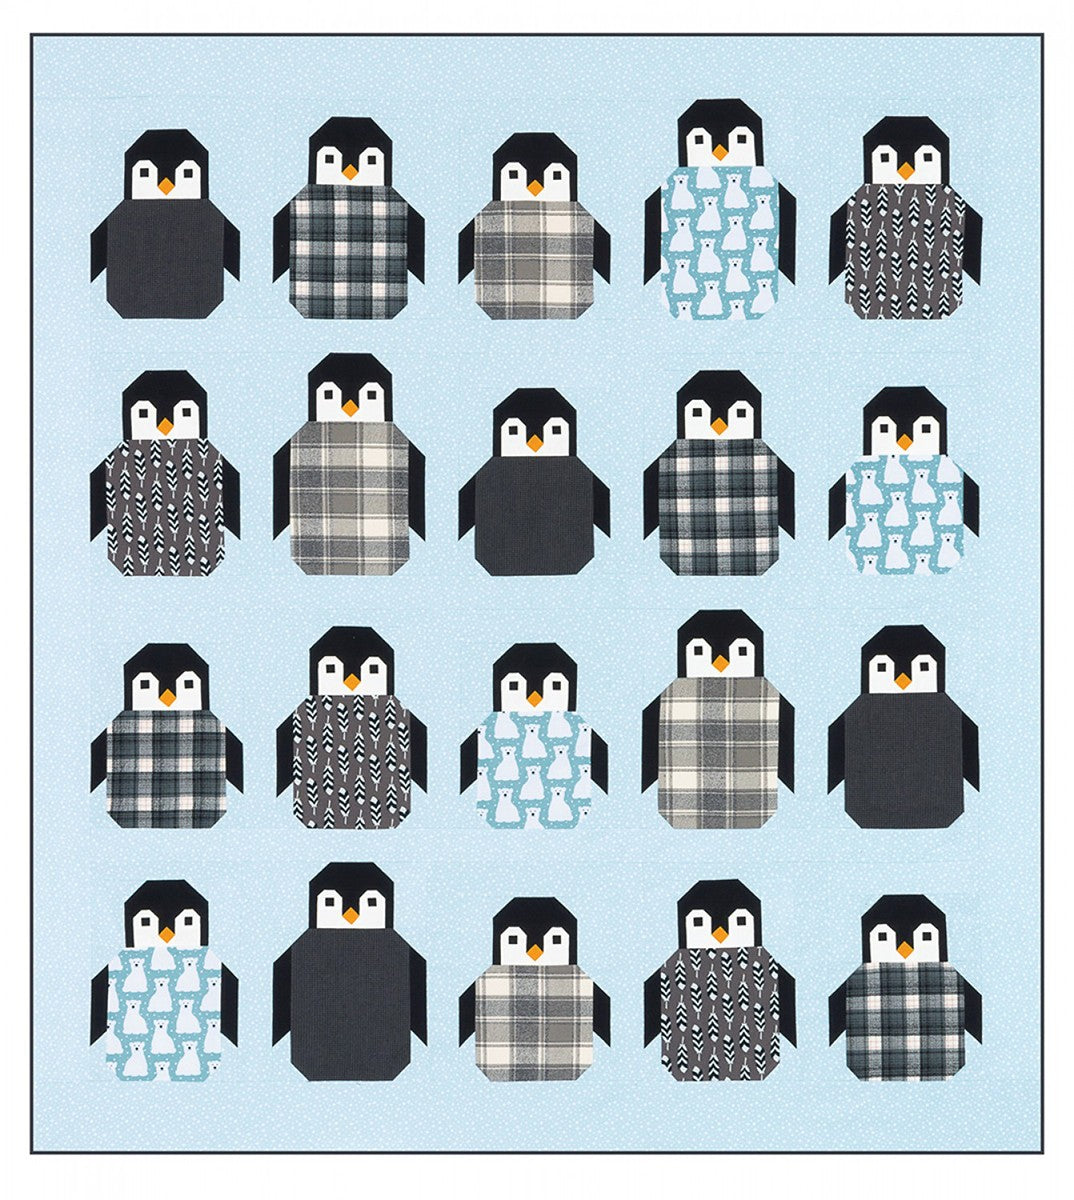 Penguin Party - Pattern - Elizabeth Hartman  (Pre-order: July 2024)